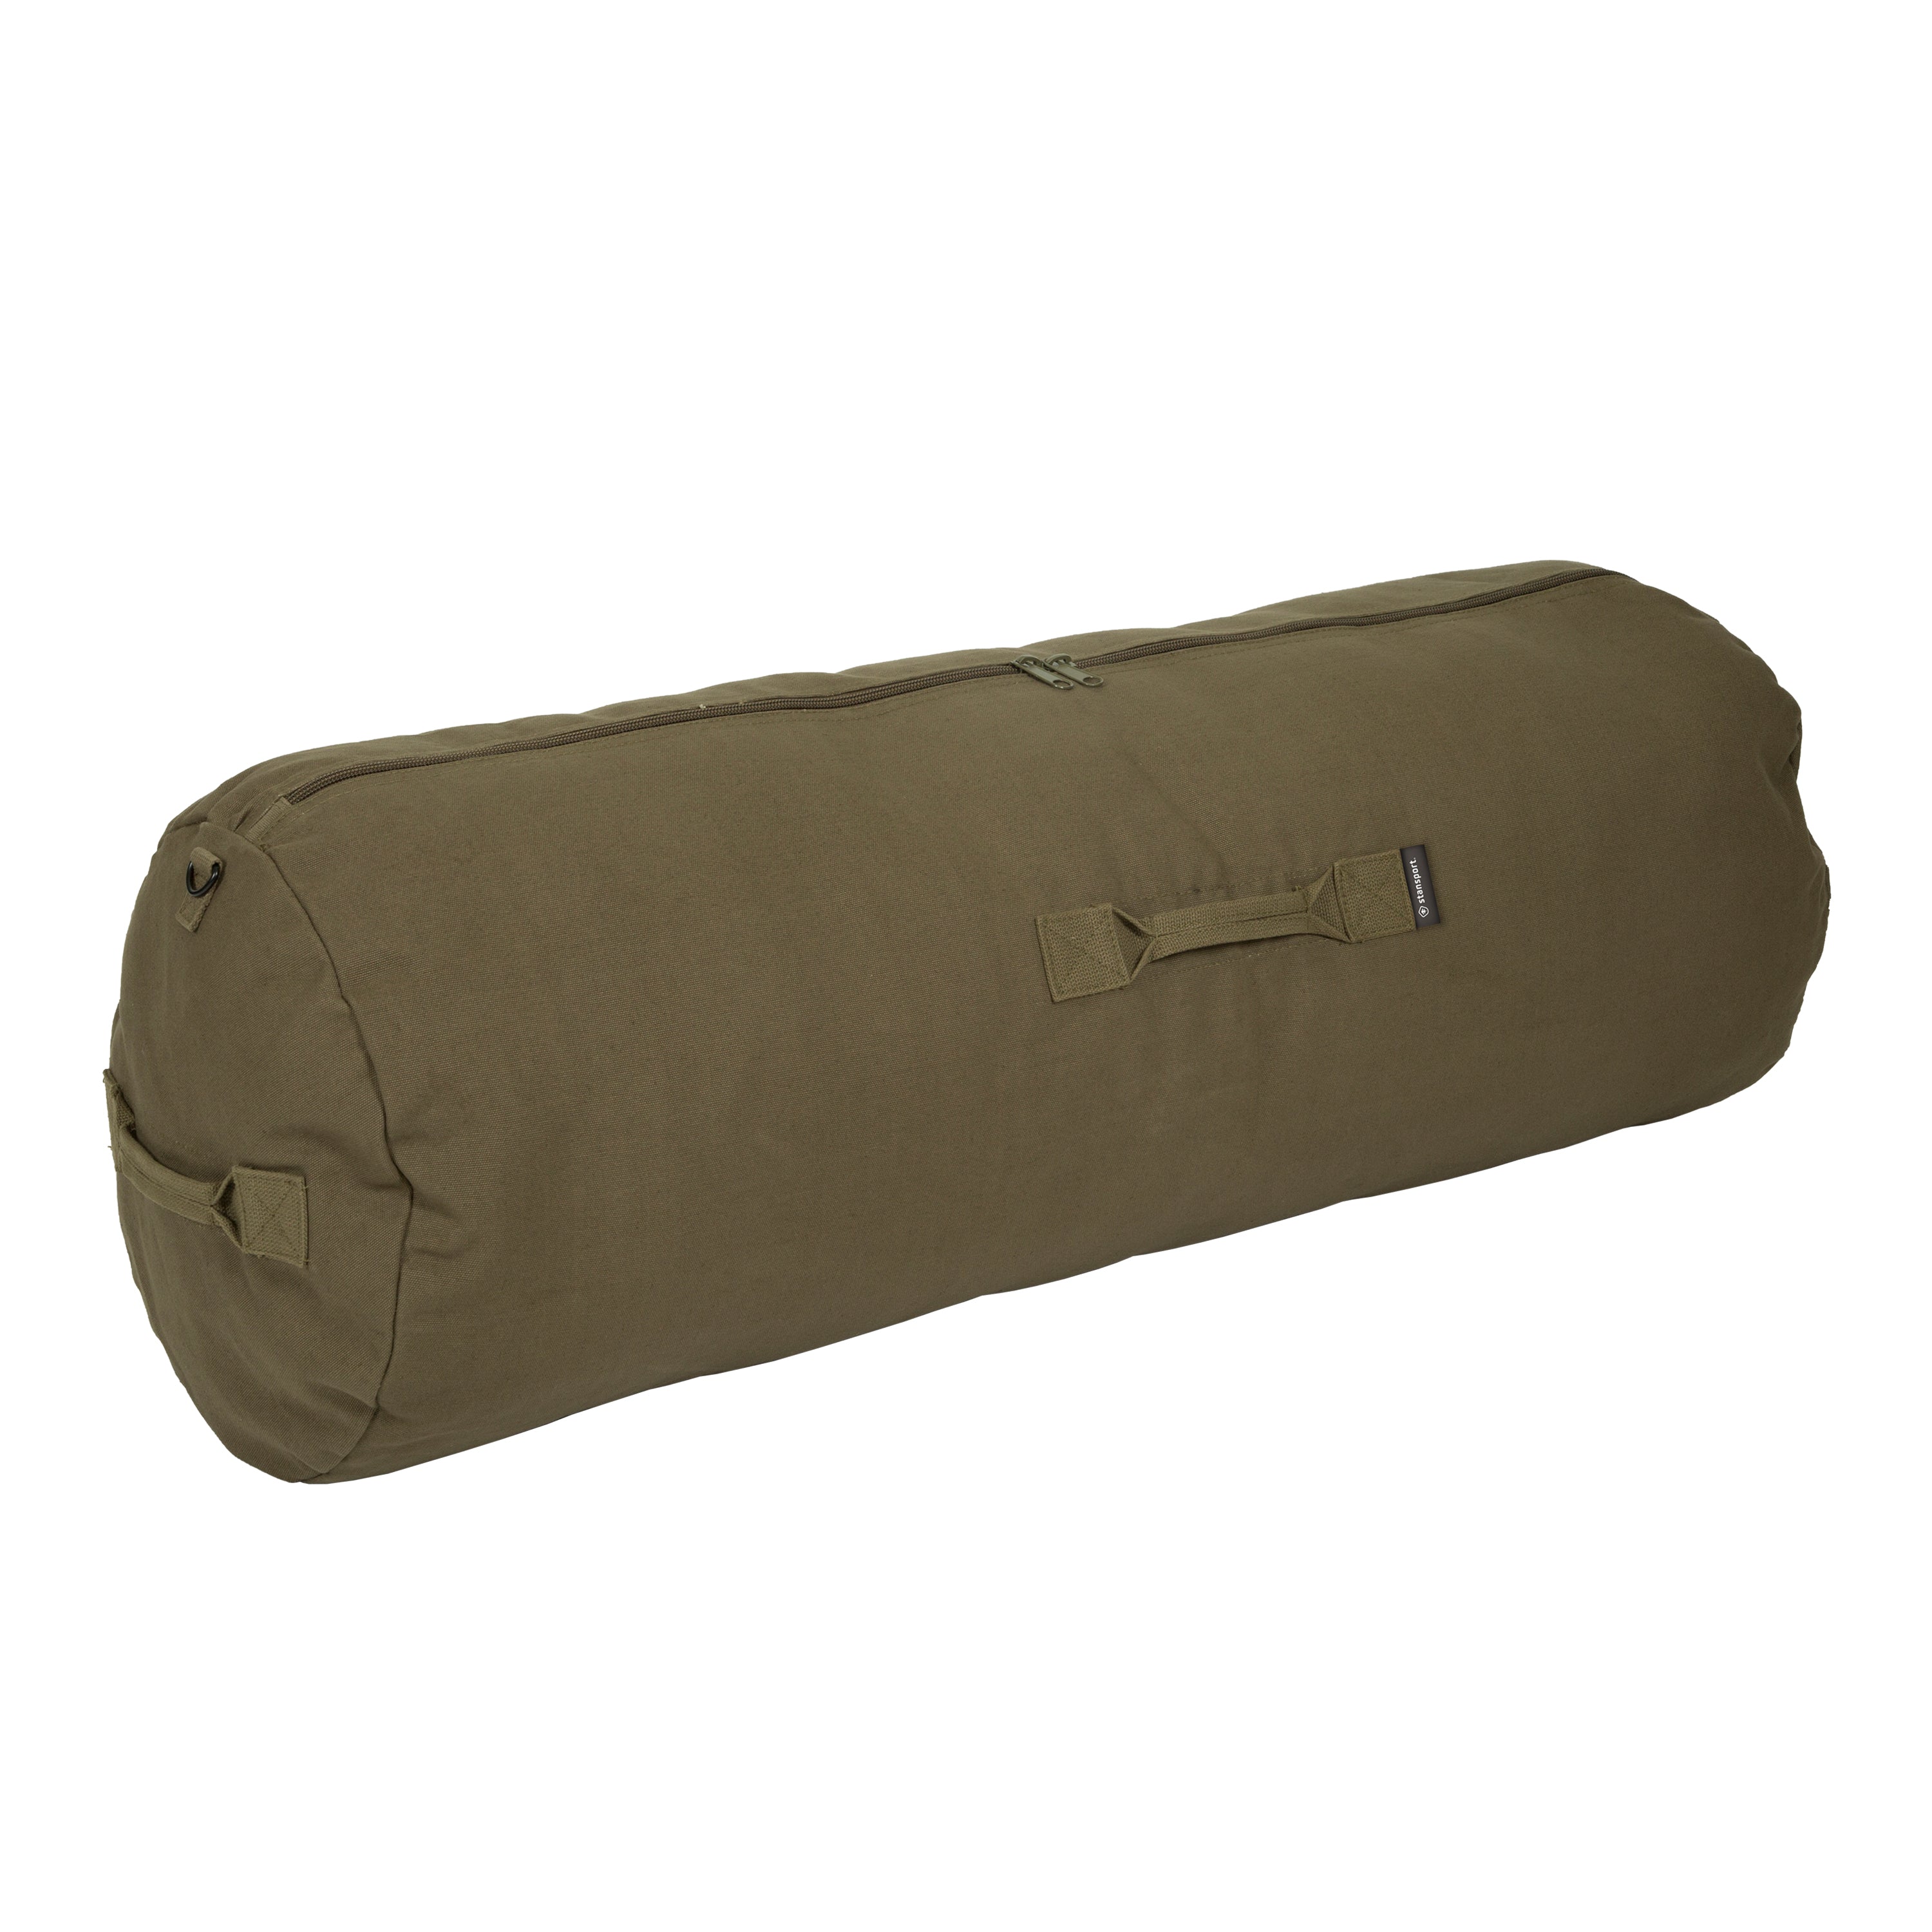 Duffel Bag With Zipper - O.D. - 42 In X 15 In X 15 In